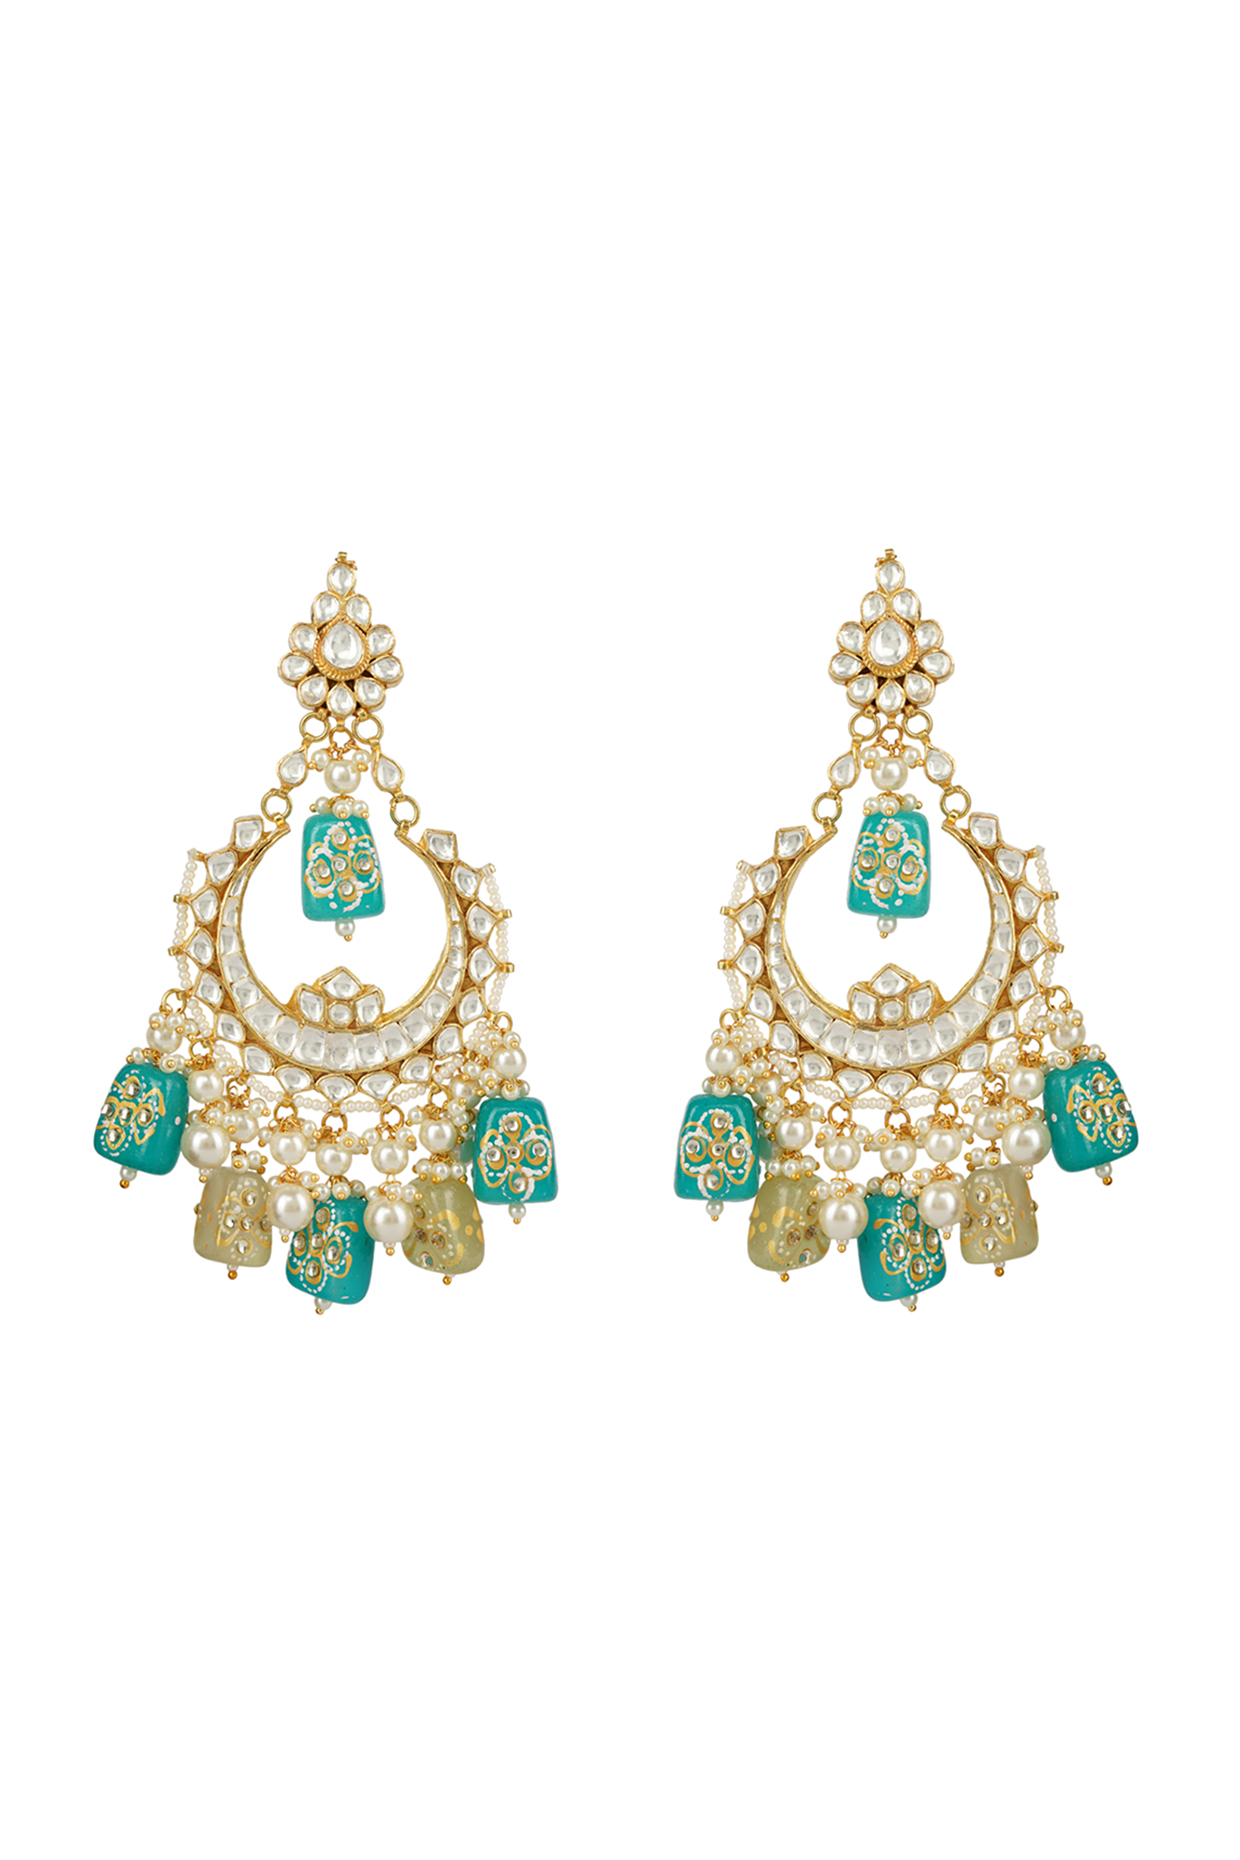 Buy Auraa Trends Designer Earrings, Necklaces, Rings, Rakhis 2021